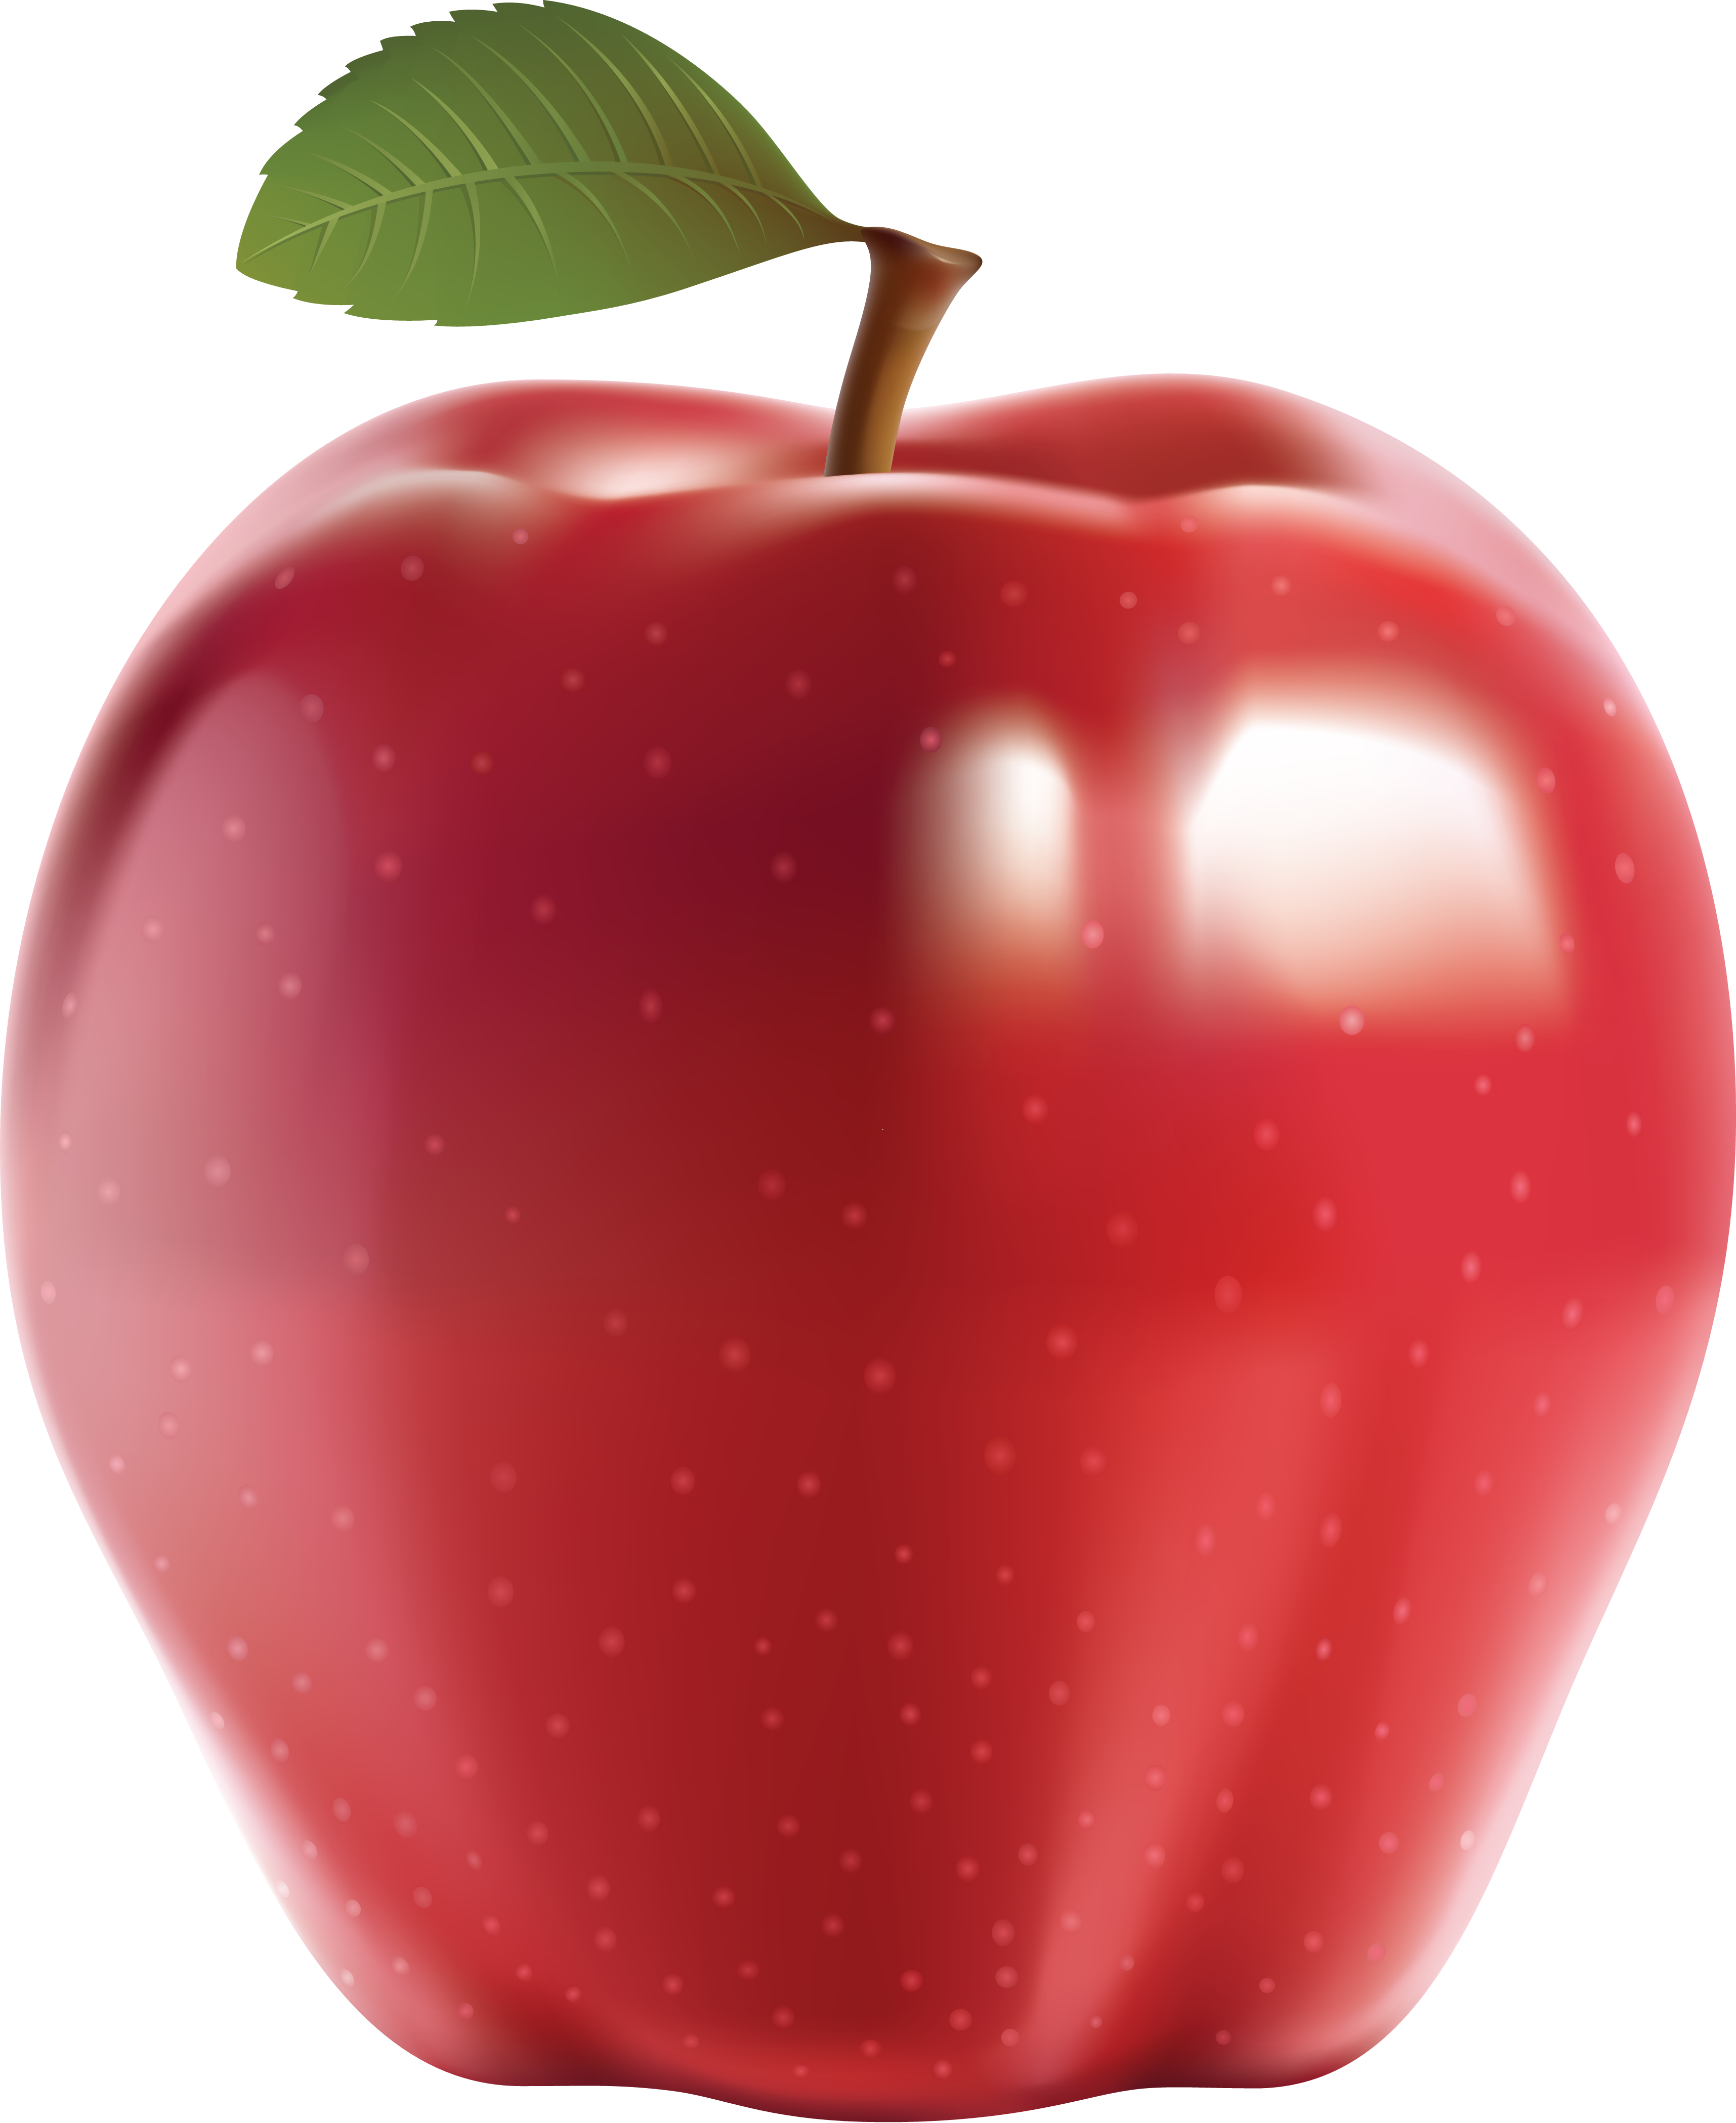 बड़ा लाल सेब